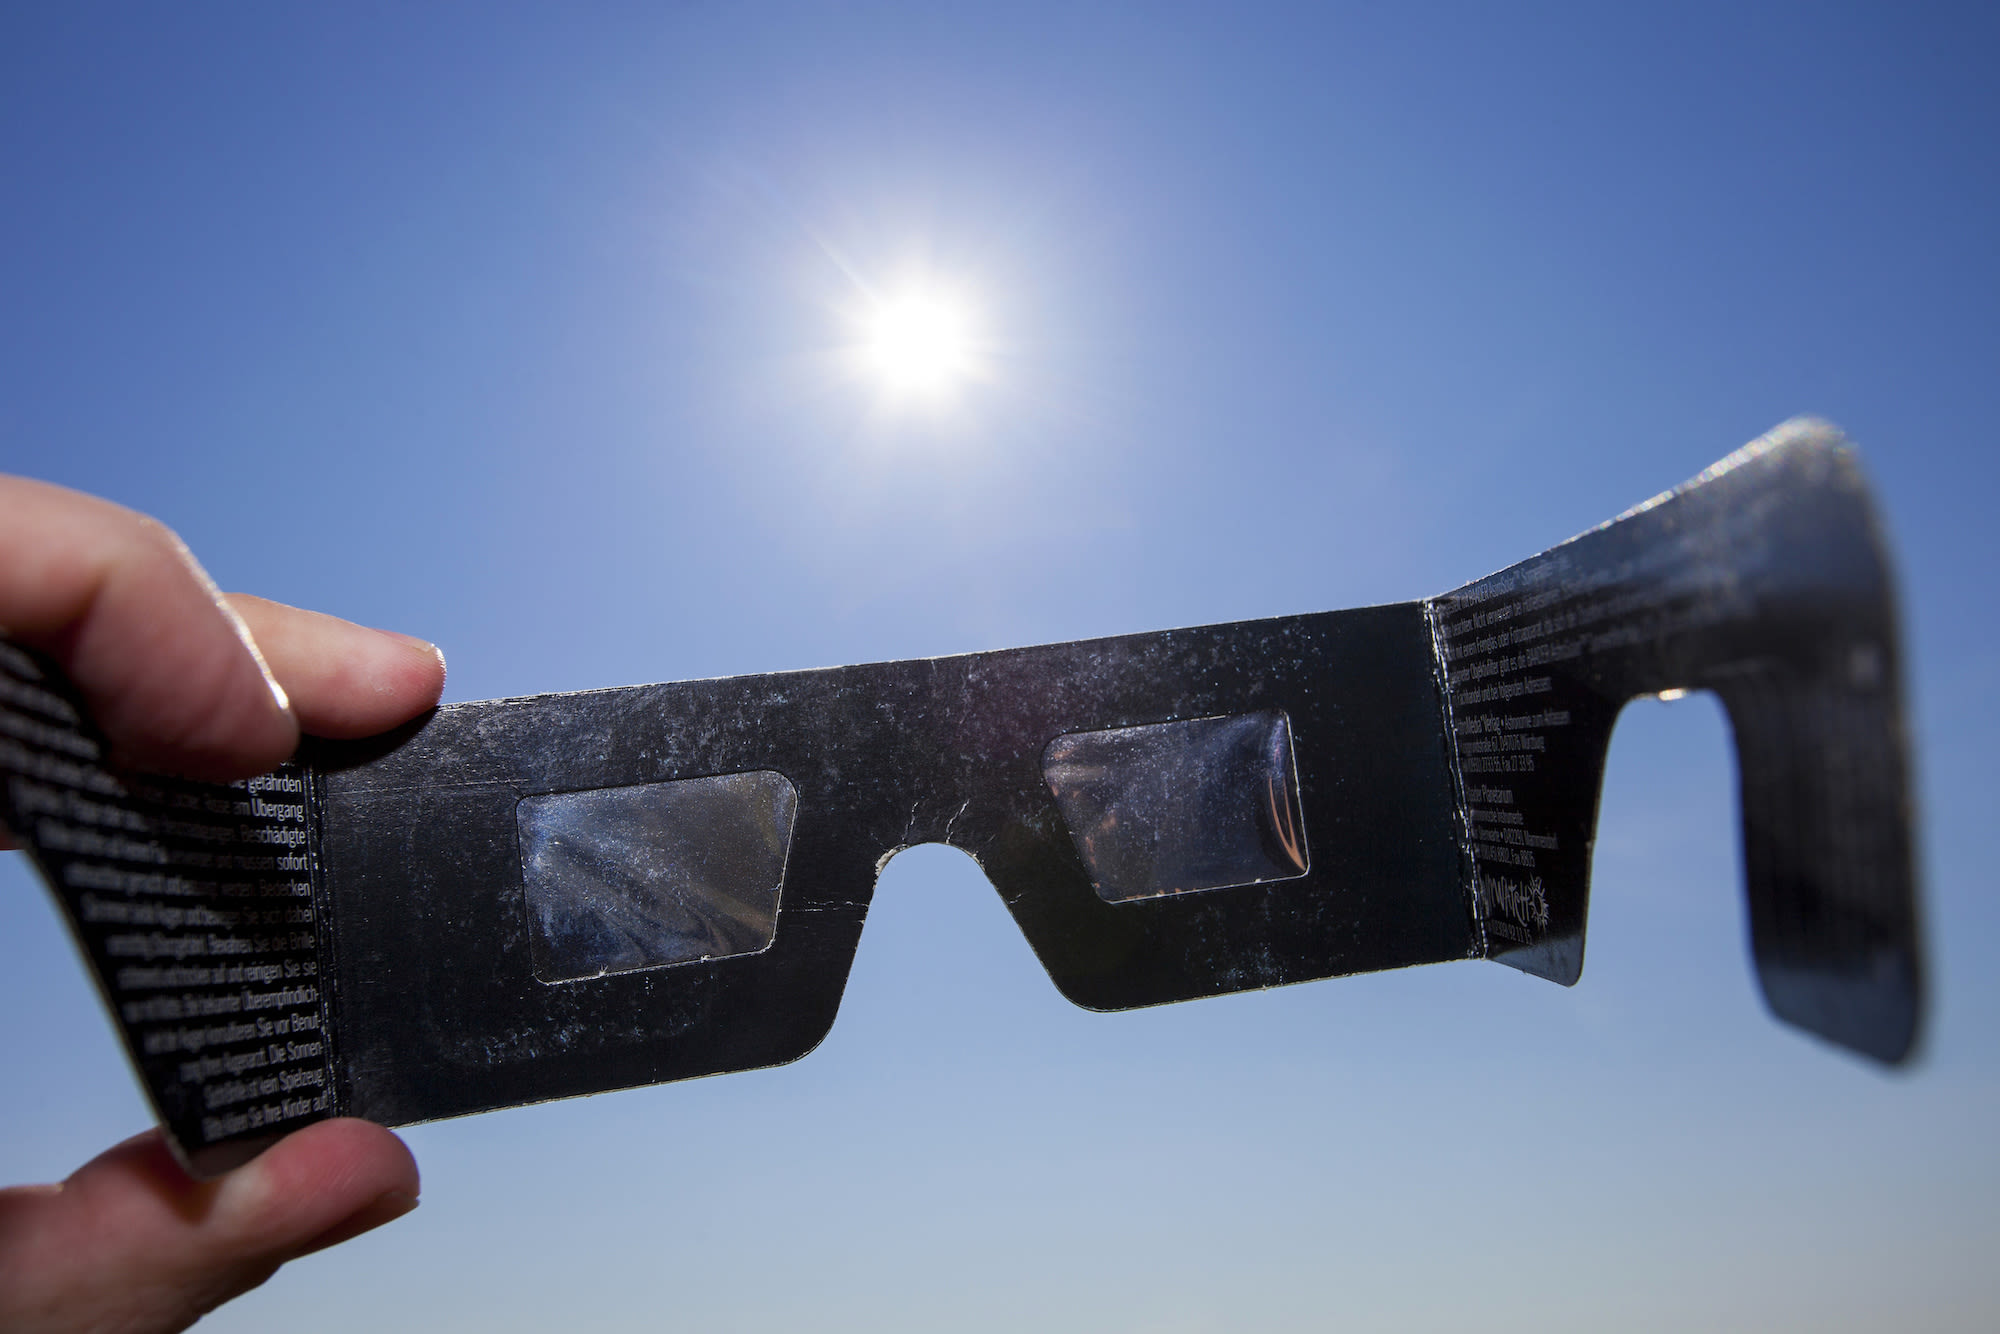 Een eclipsbril voor bescherming tegen felle zonnestralen bij een zonsverduistering.
Foto: Adobe Stock / Bruno_A